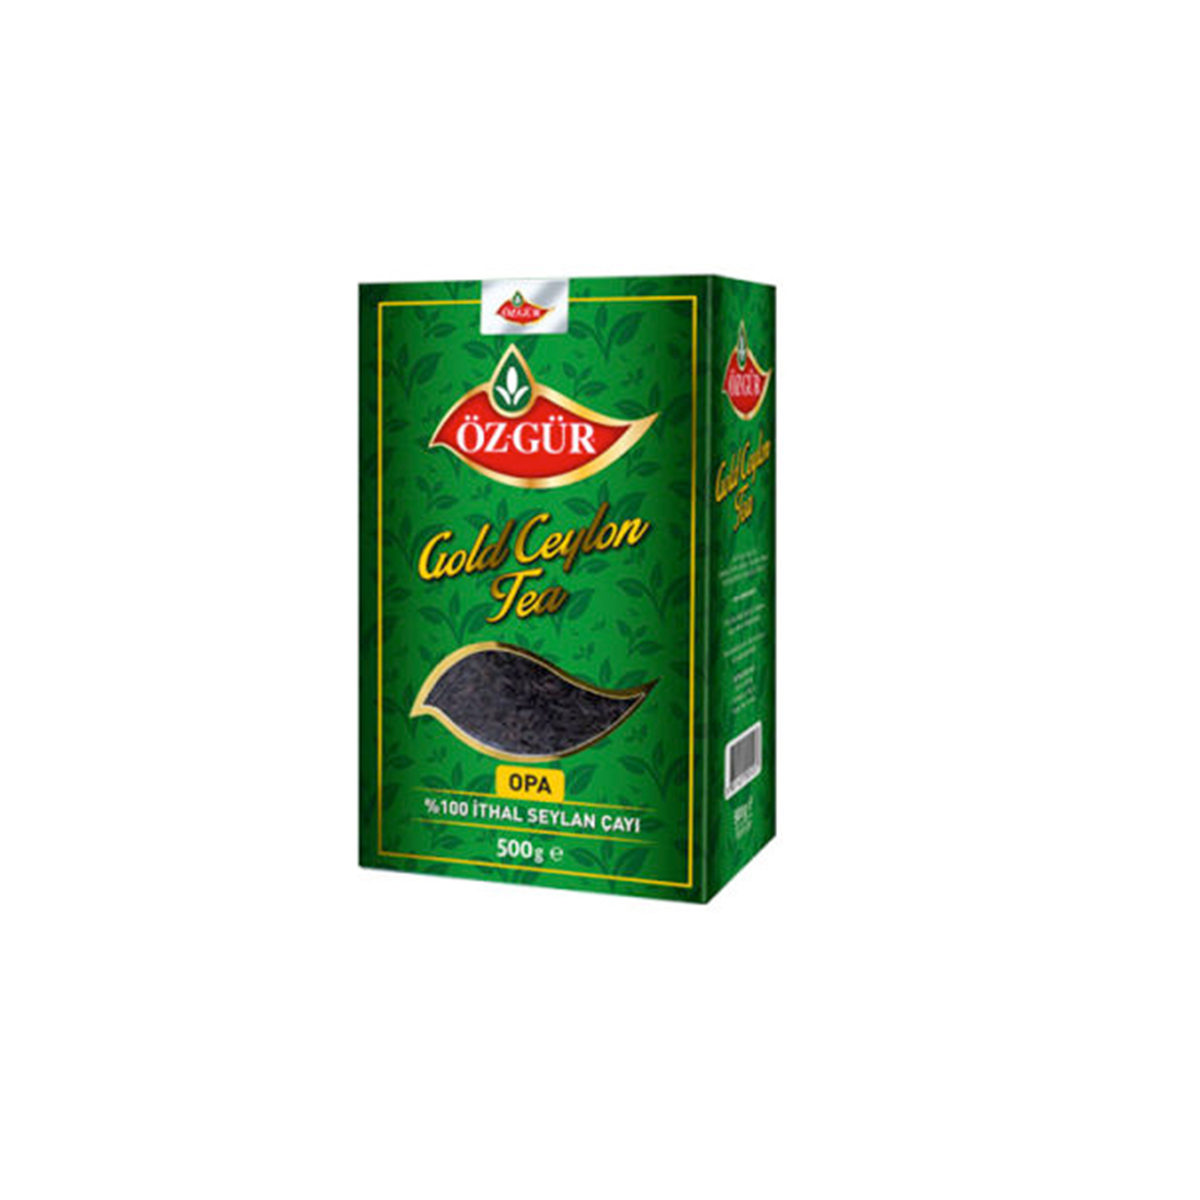 ÖZGÜR Opa Gold Ceylon Çayı 500 gr